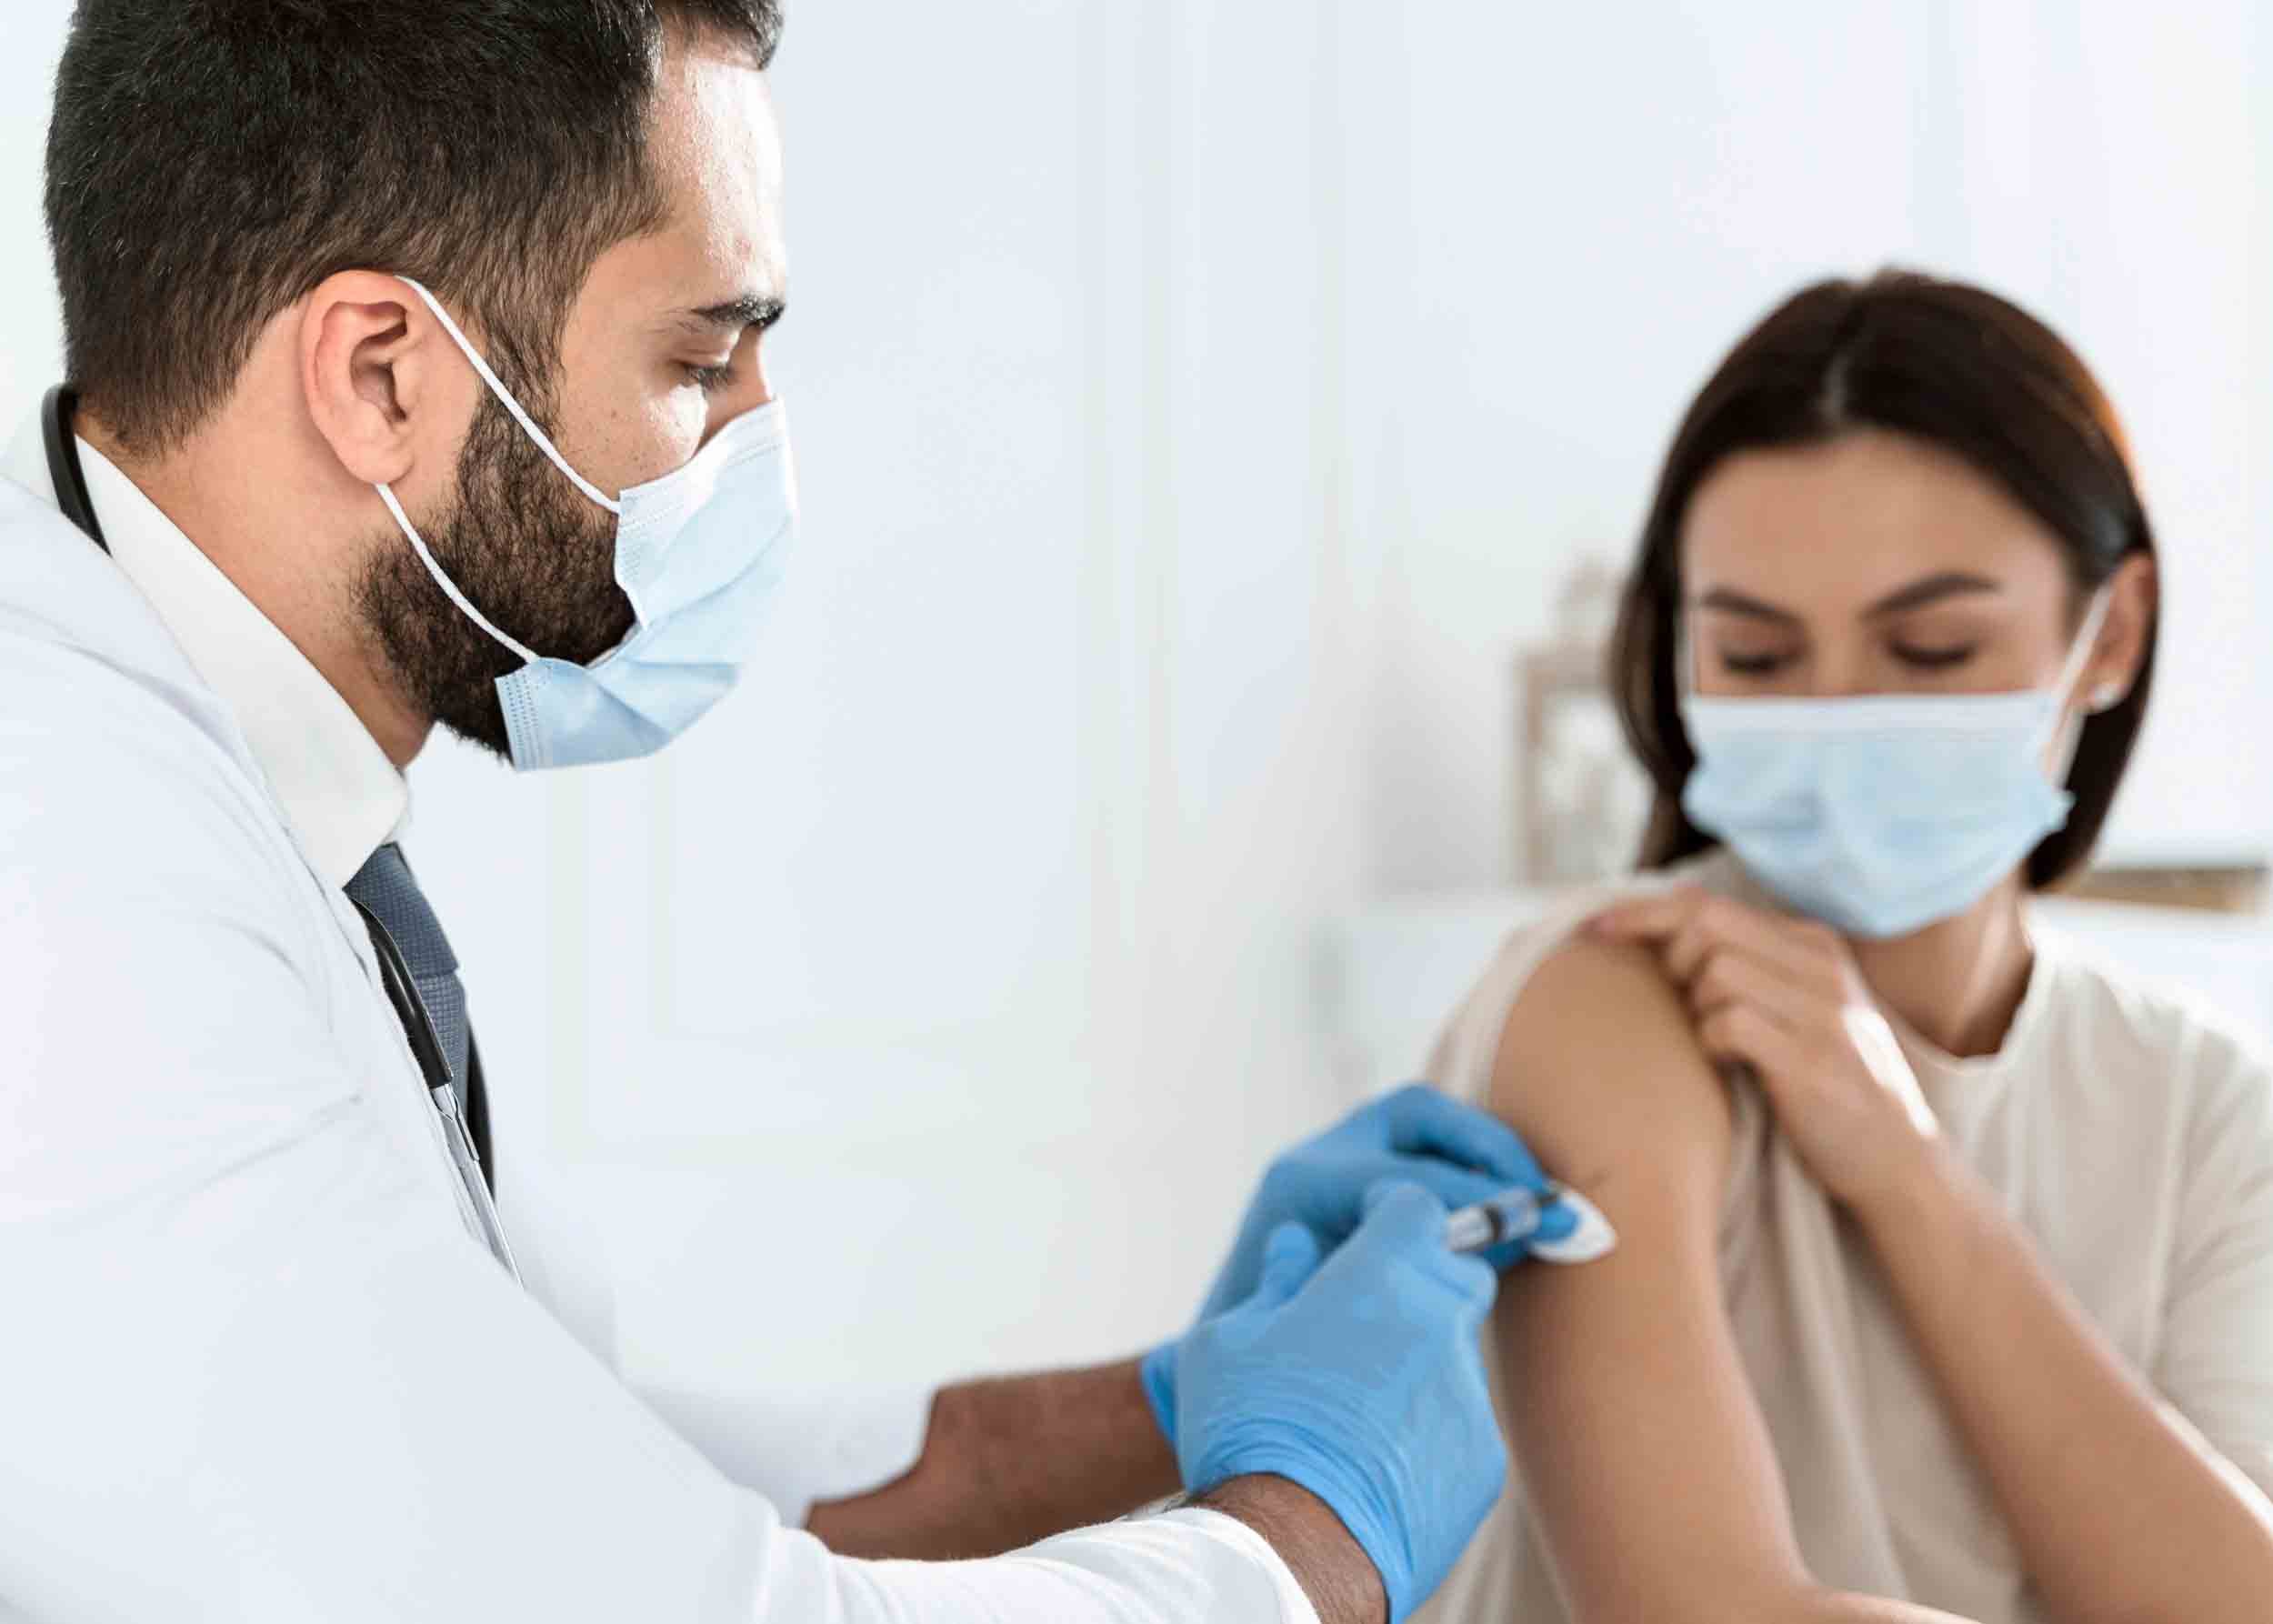  Le condylome chez la femme peut être prévenu avec un vaccin